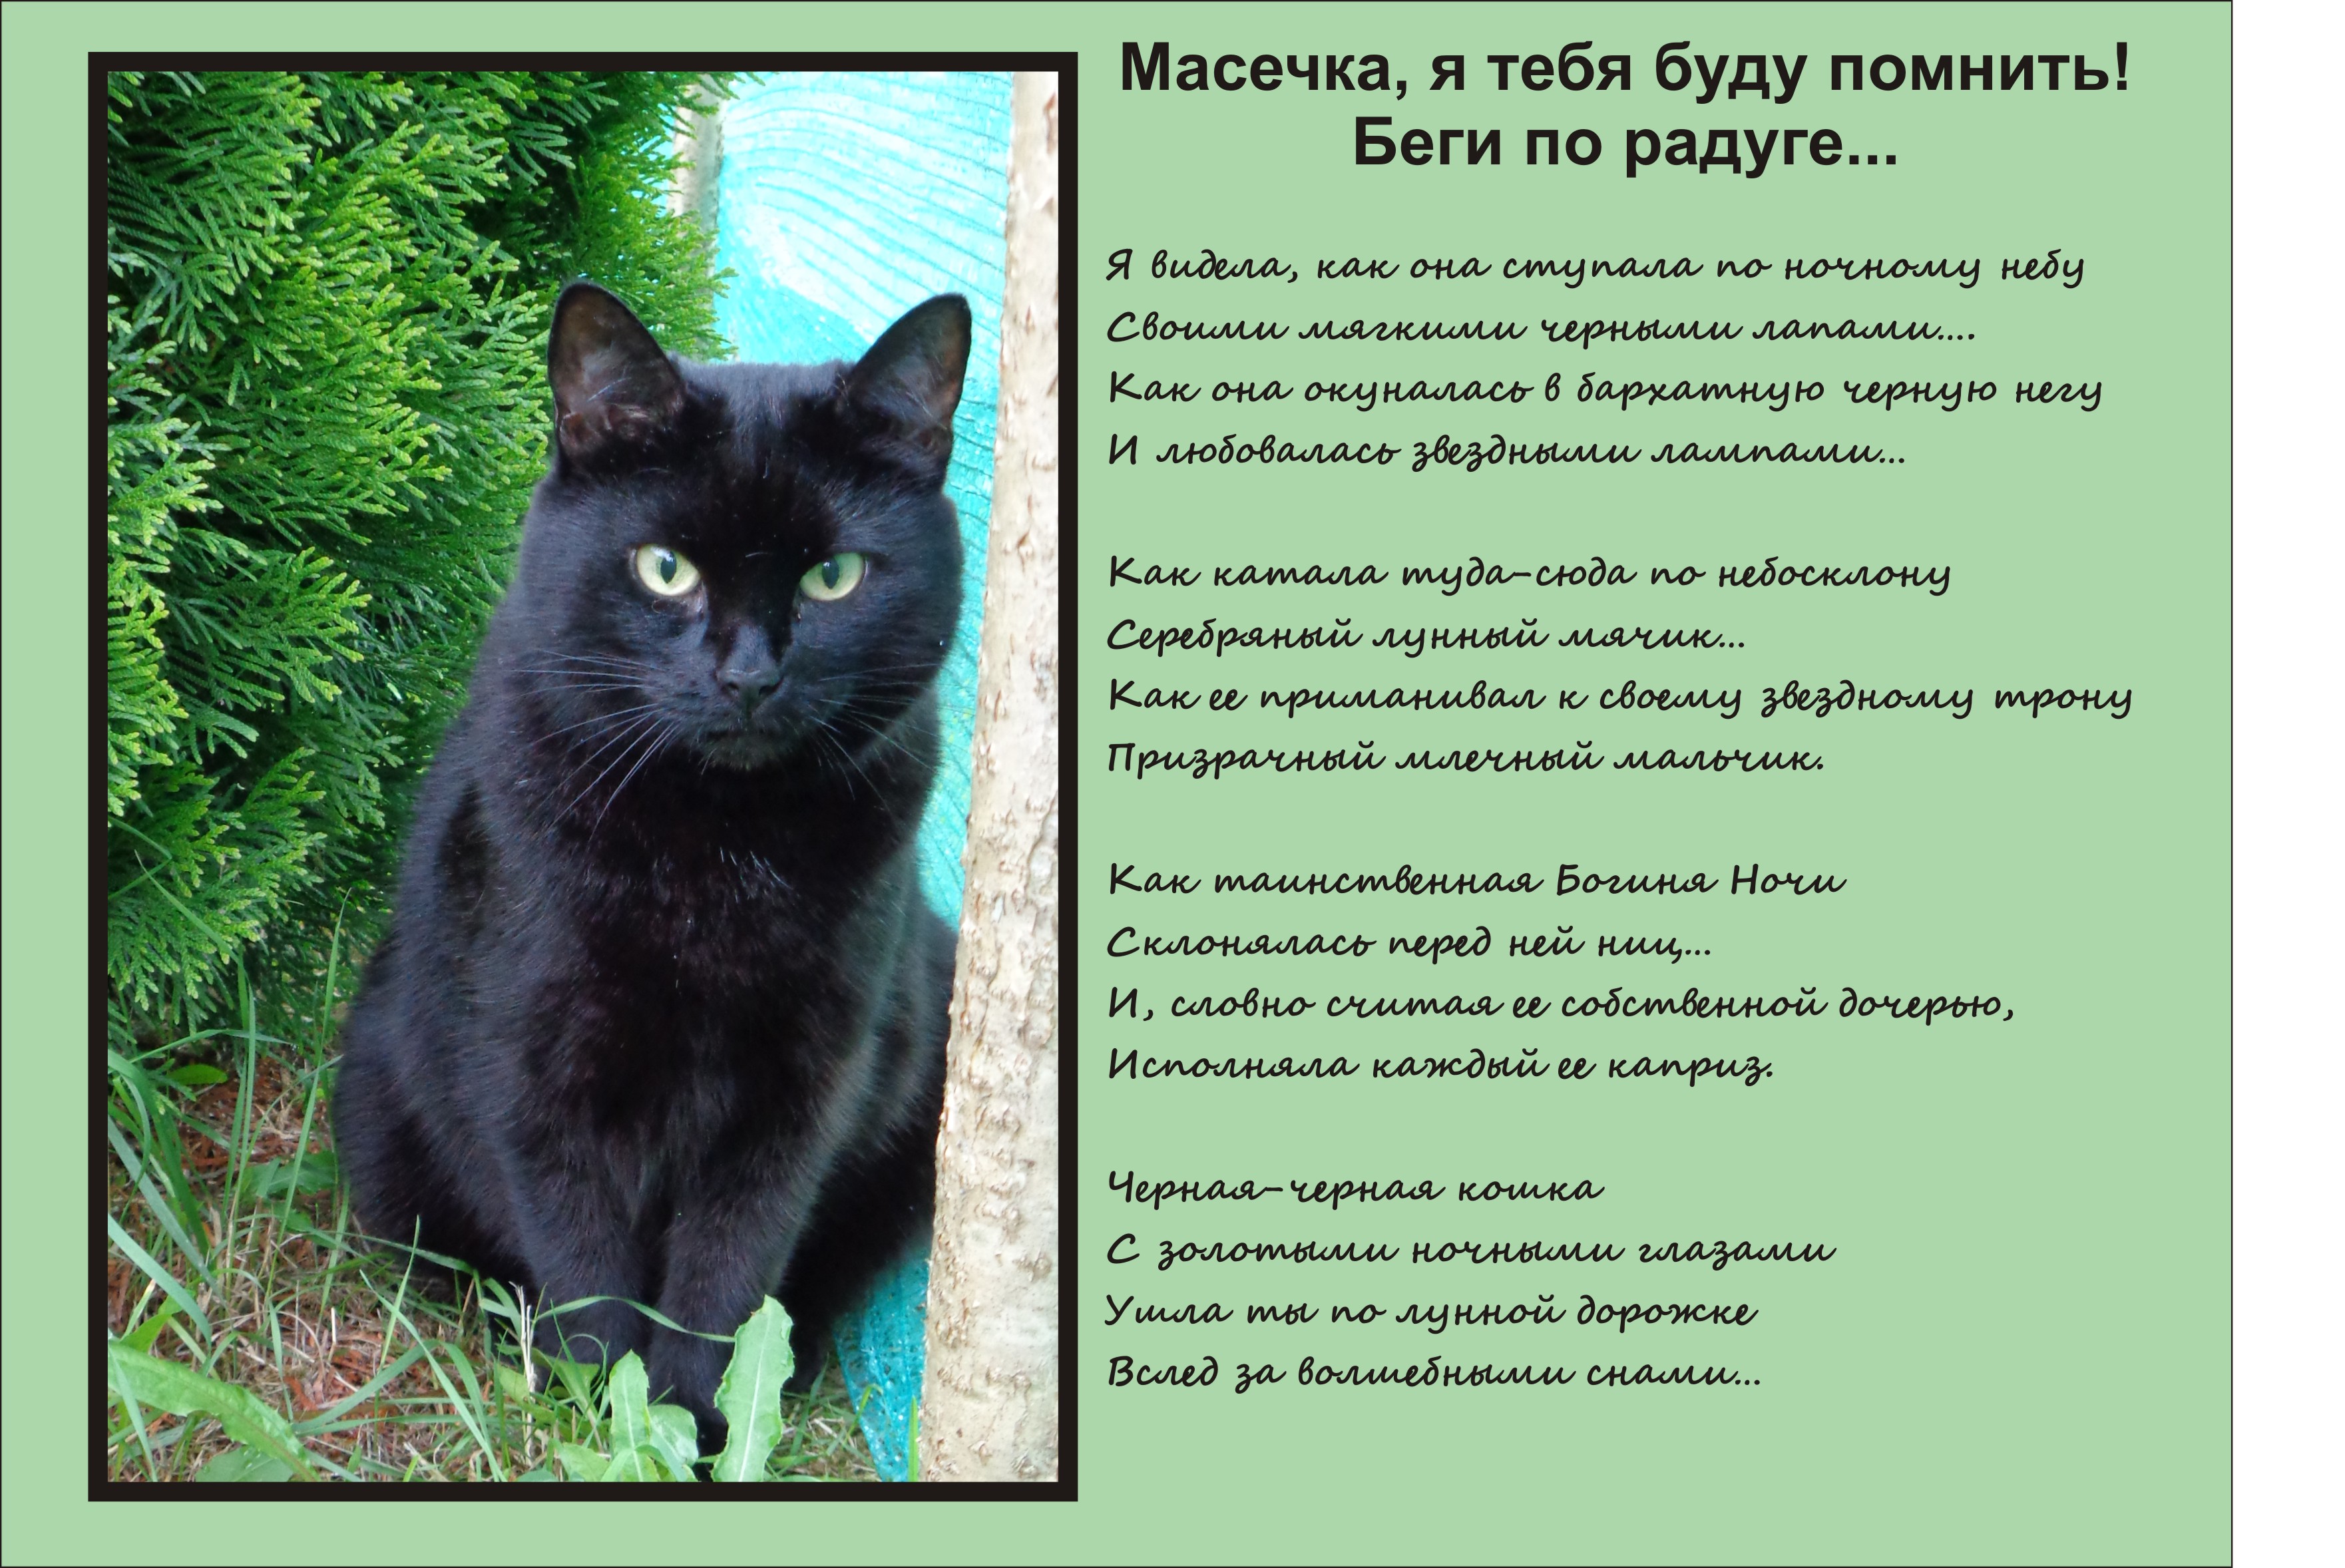 Описание черной кошки. Стихи о котах которые ушли. Стихотворение посвященное коту. Стихи о котах ушедших на радугу. Стихотворение про черную кошку.